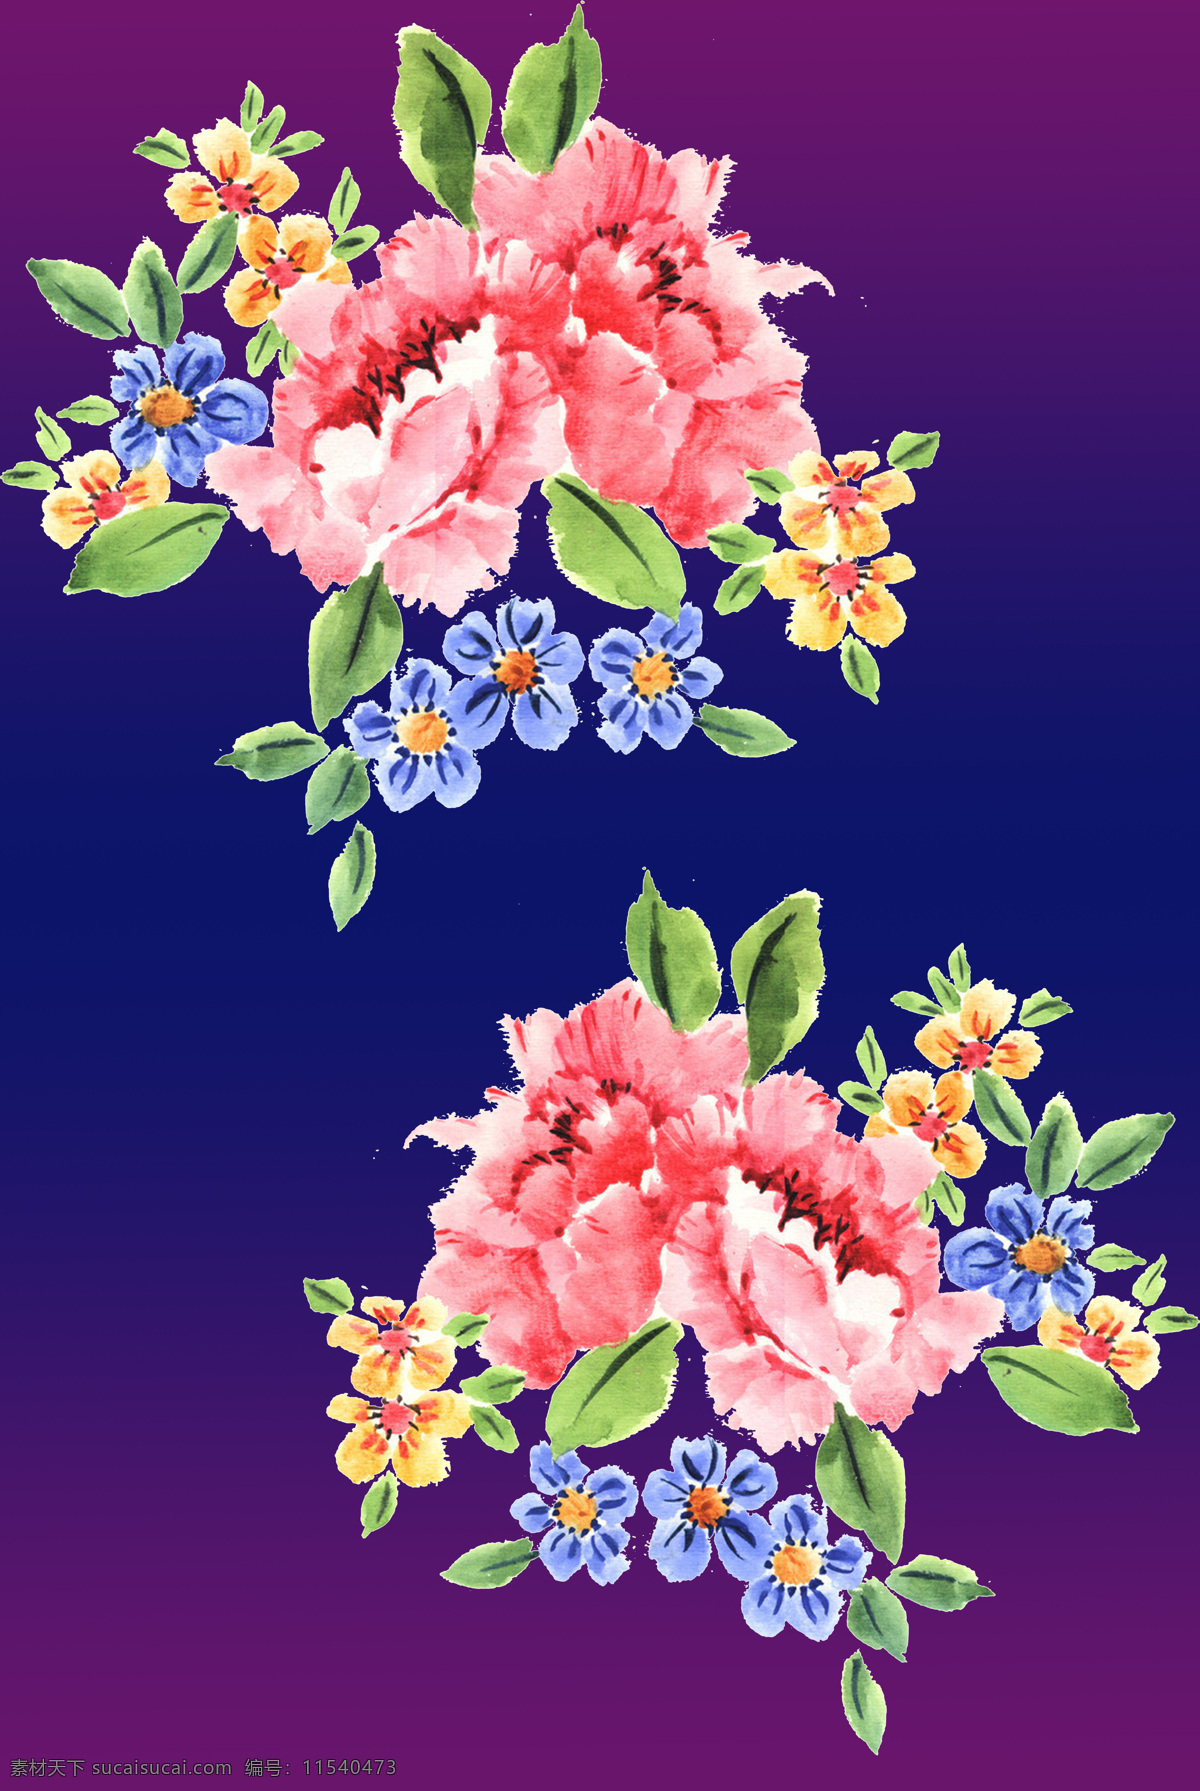 时尚 水彩 花卉 牡丹 大 花朵 组合 水彩花卉 大花朵 底纹边框 花边花纹